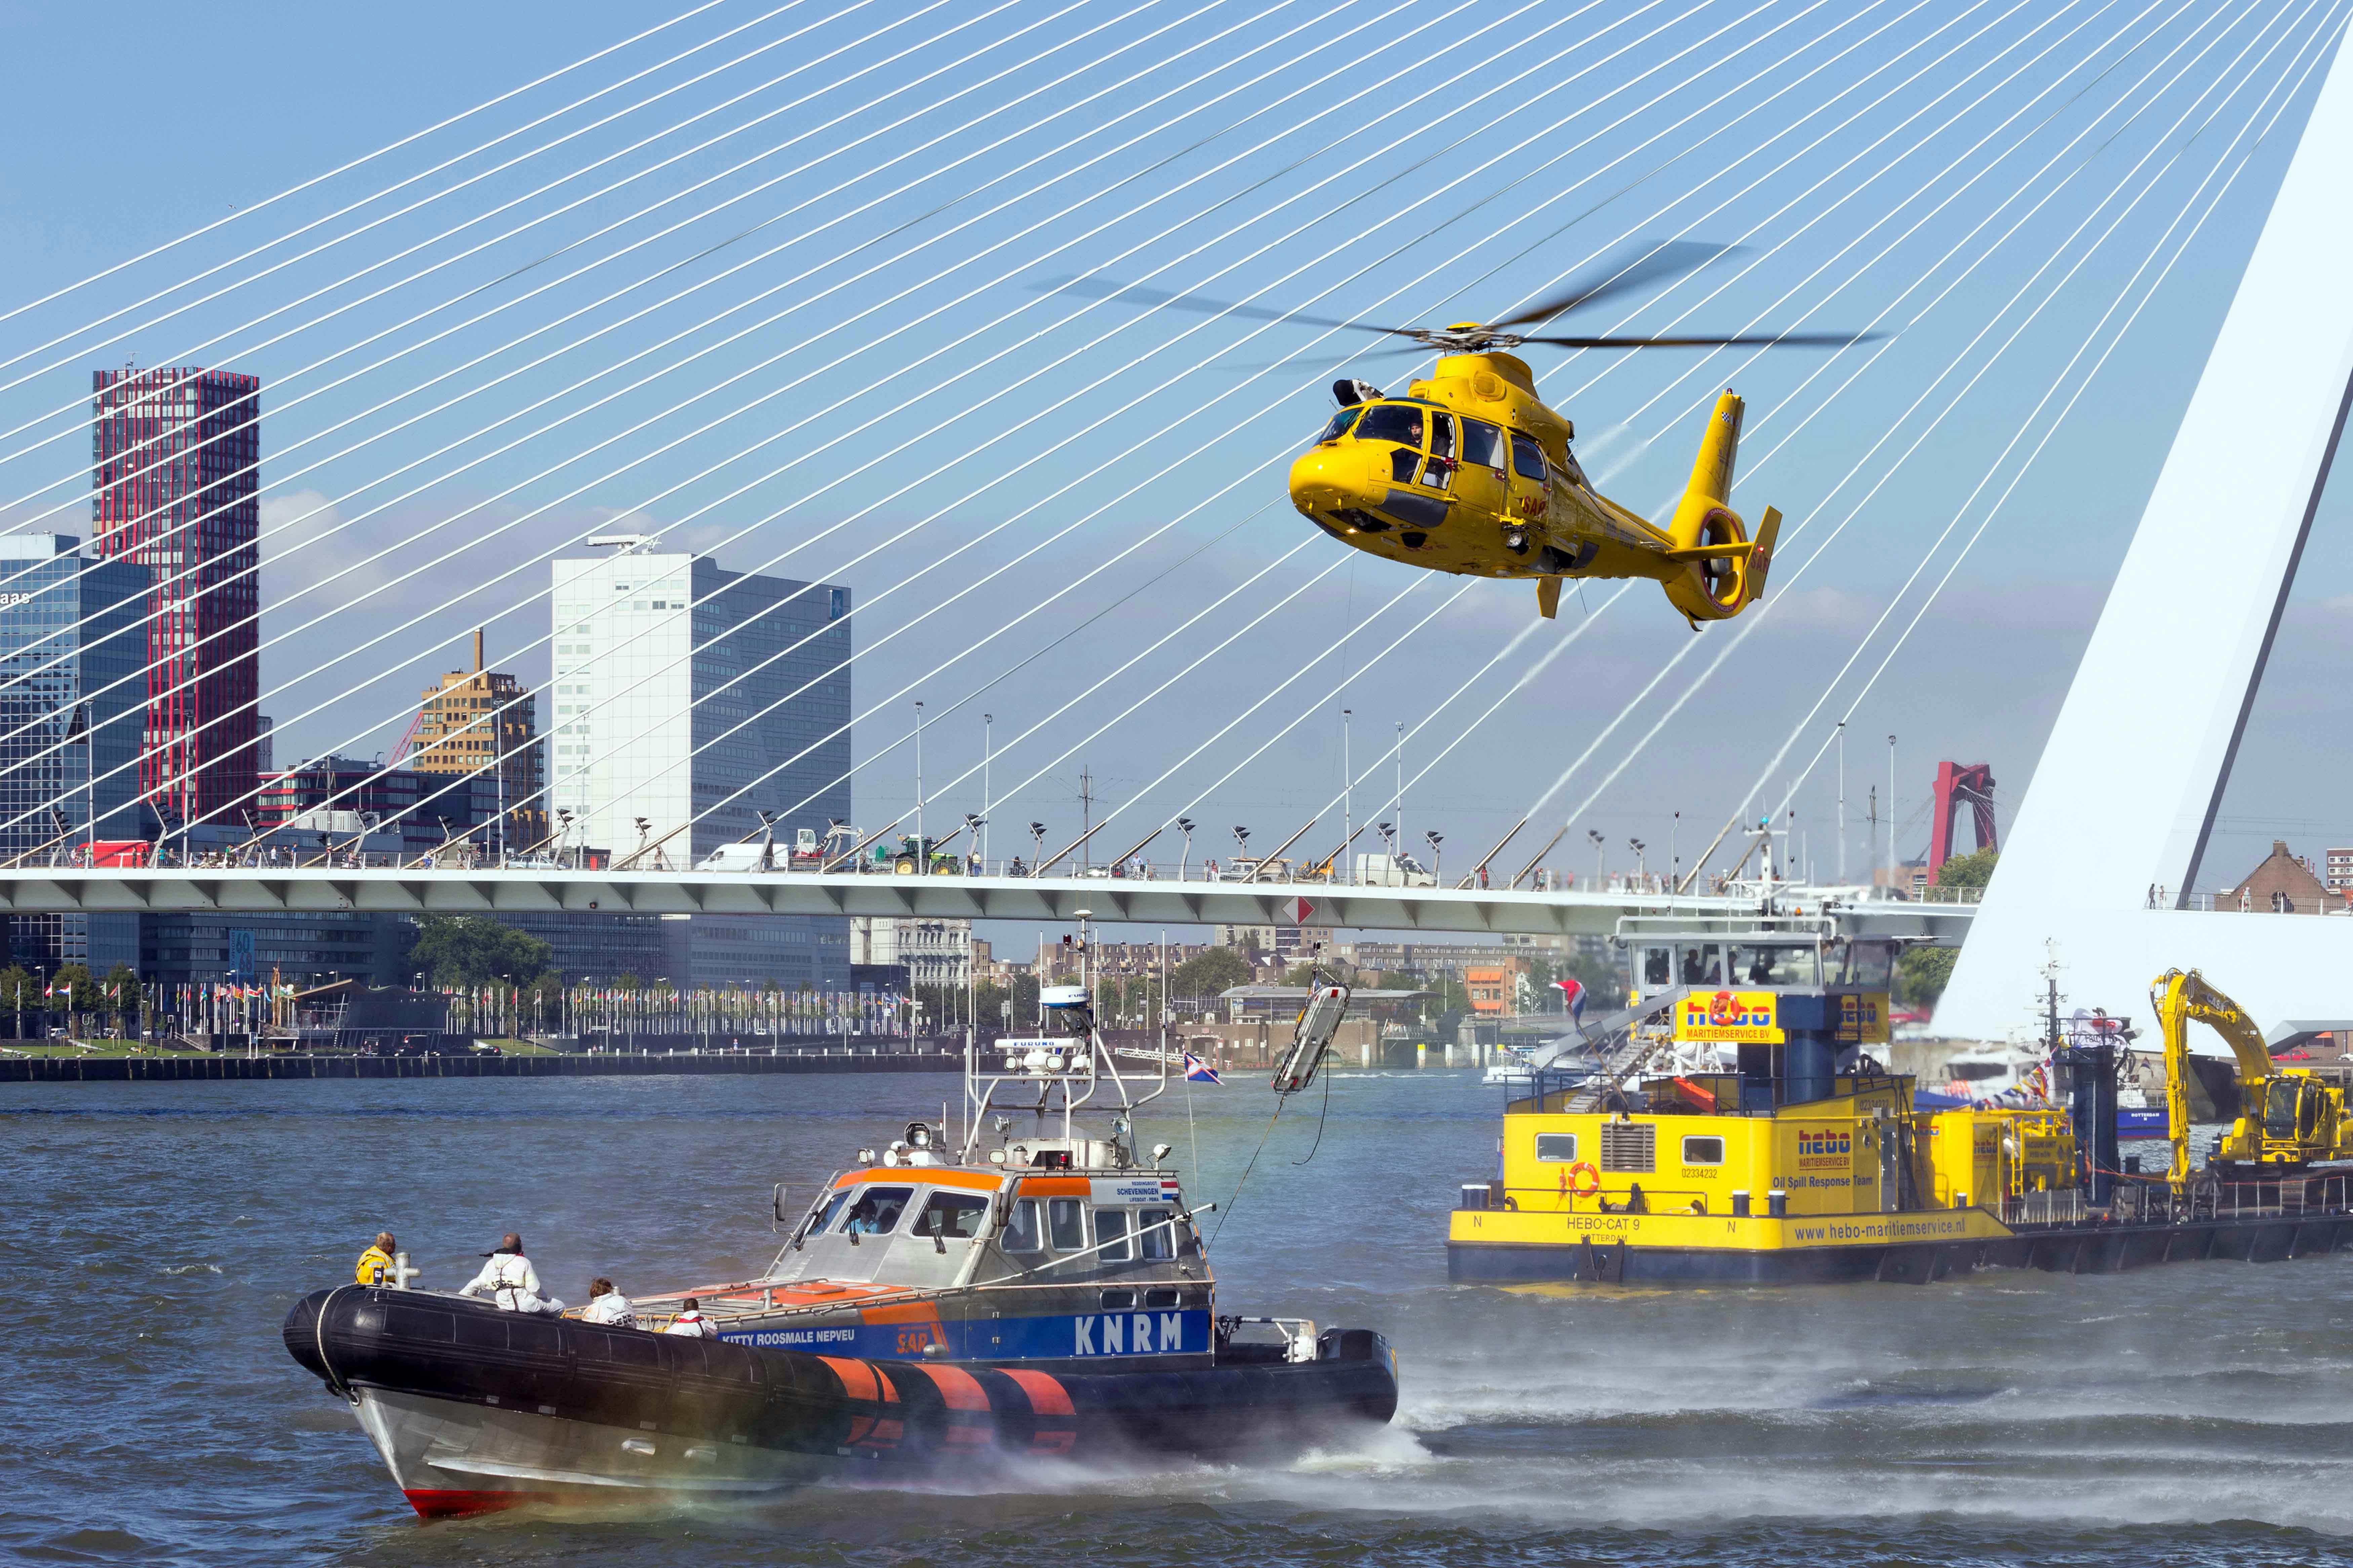 Bateau, hélicoptère et ferry dans un environnement urbain.